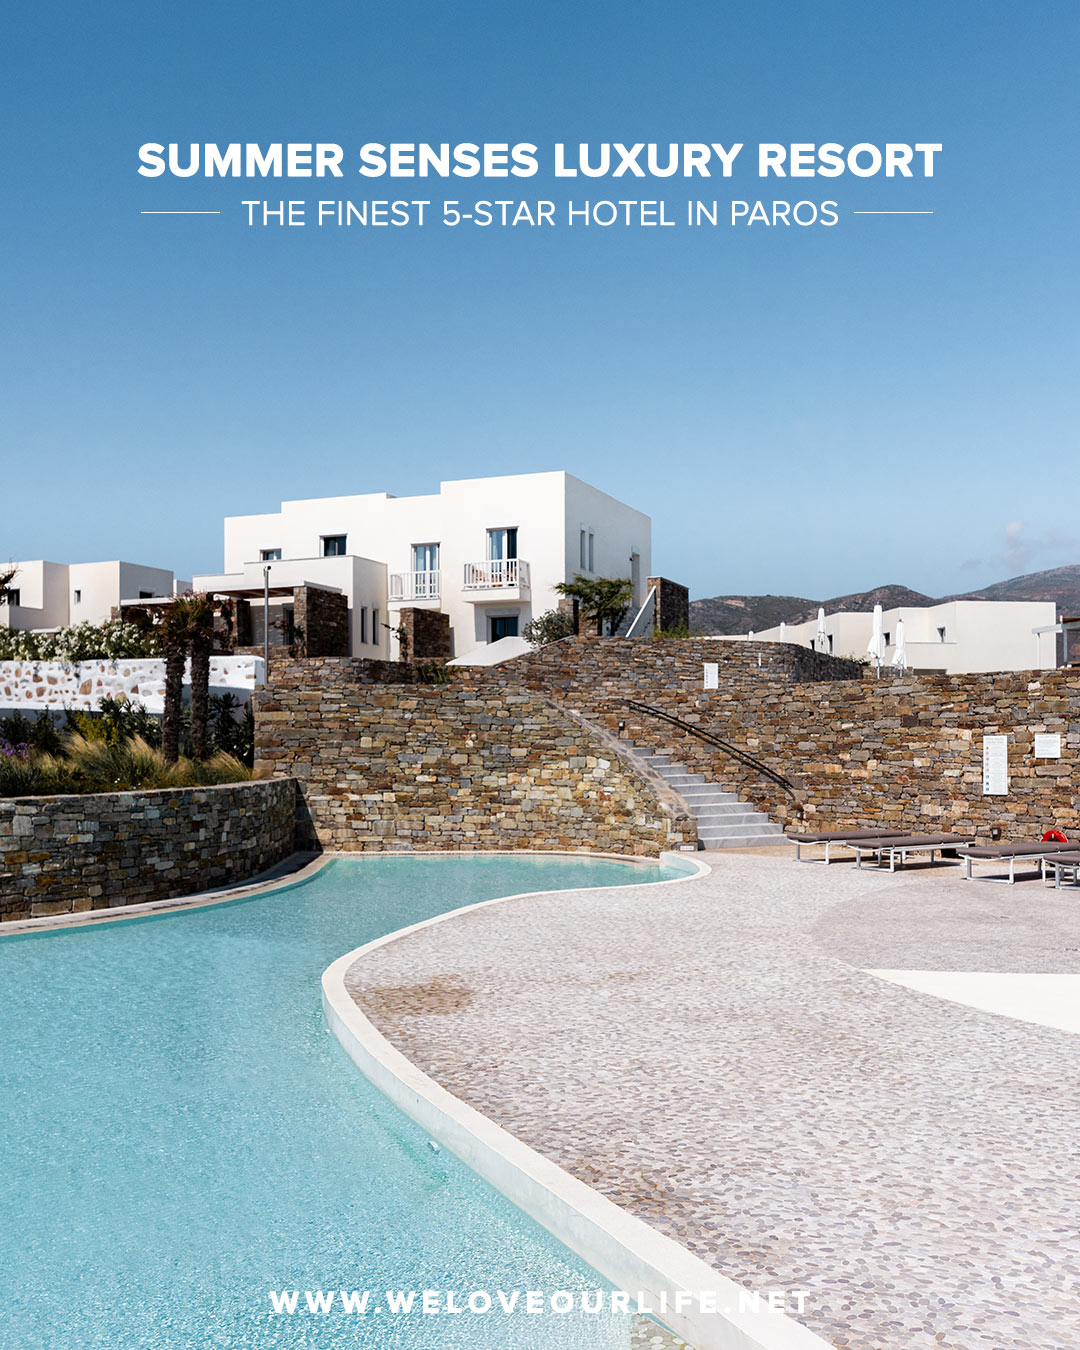 Summer Senses Luxury Resort - The Finest 5-Star Hotel in Paros